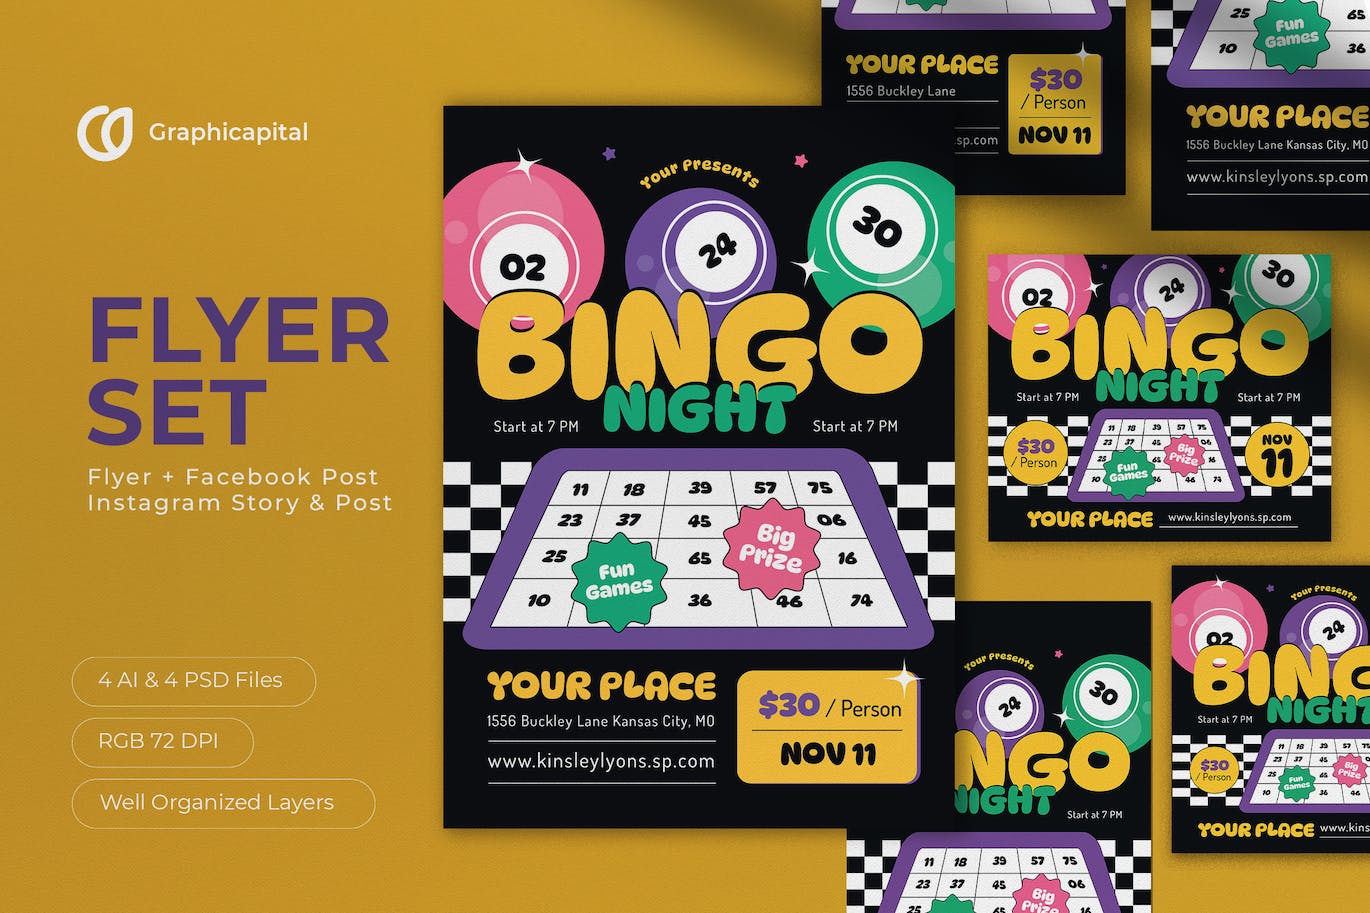 黑色平面设计宾果之夜传单海报素材 Black Flat Design Bingo Night Flyer Set 设计素材 第1张